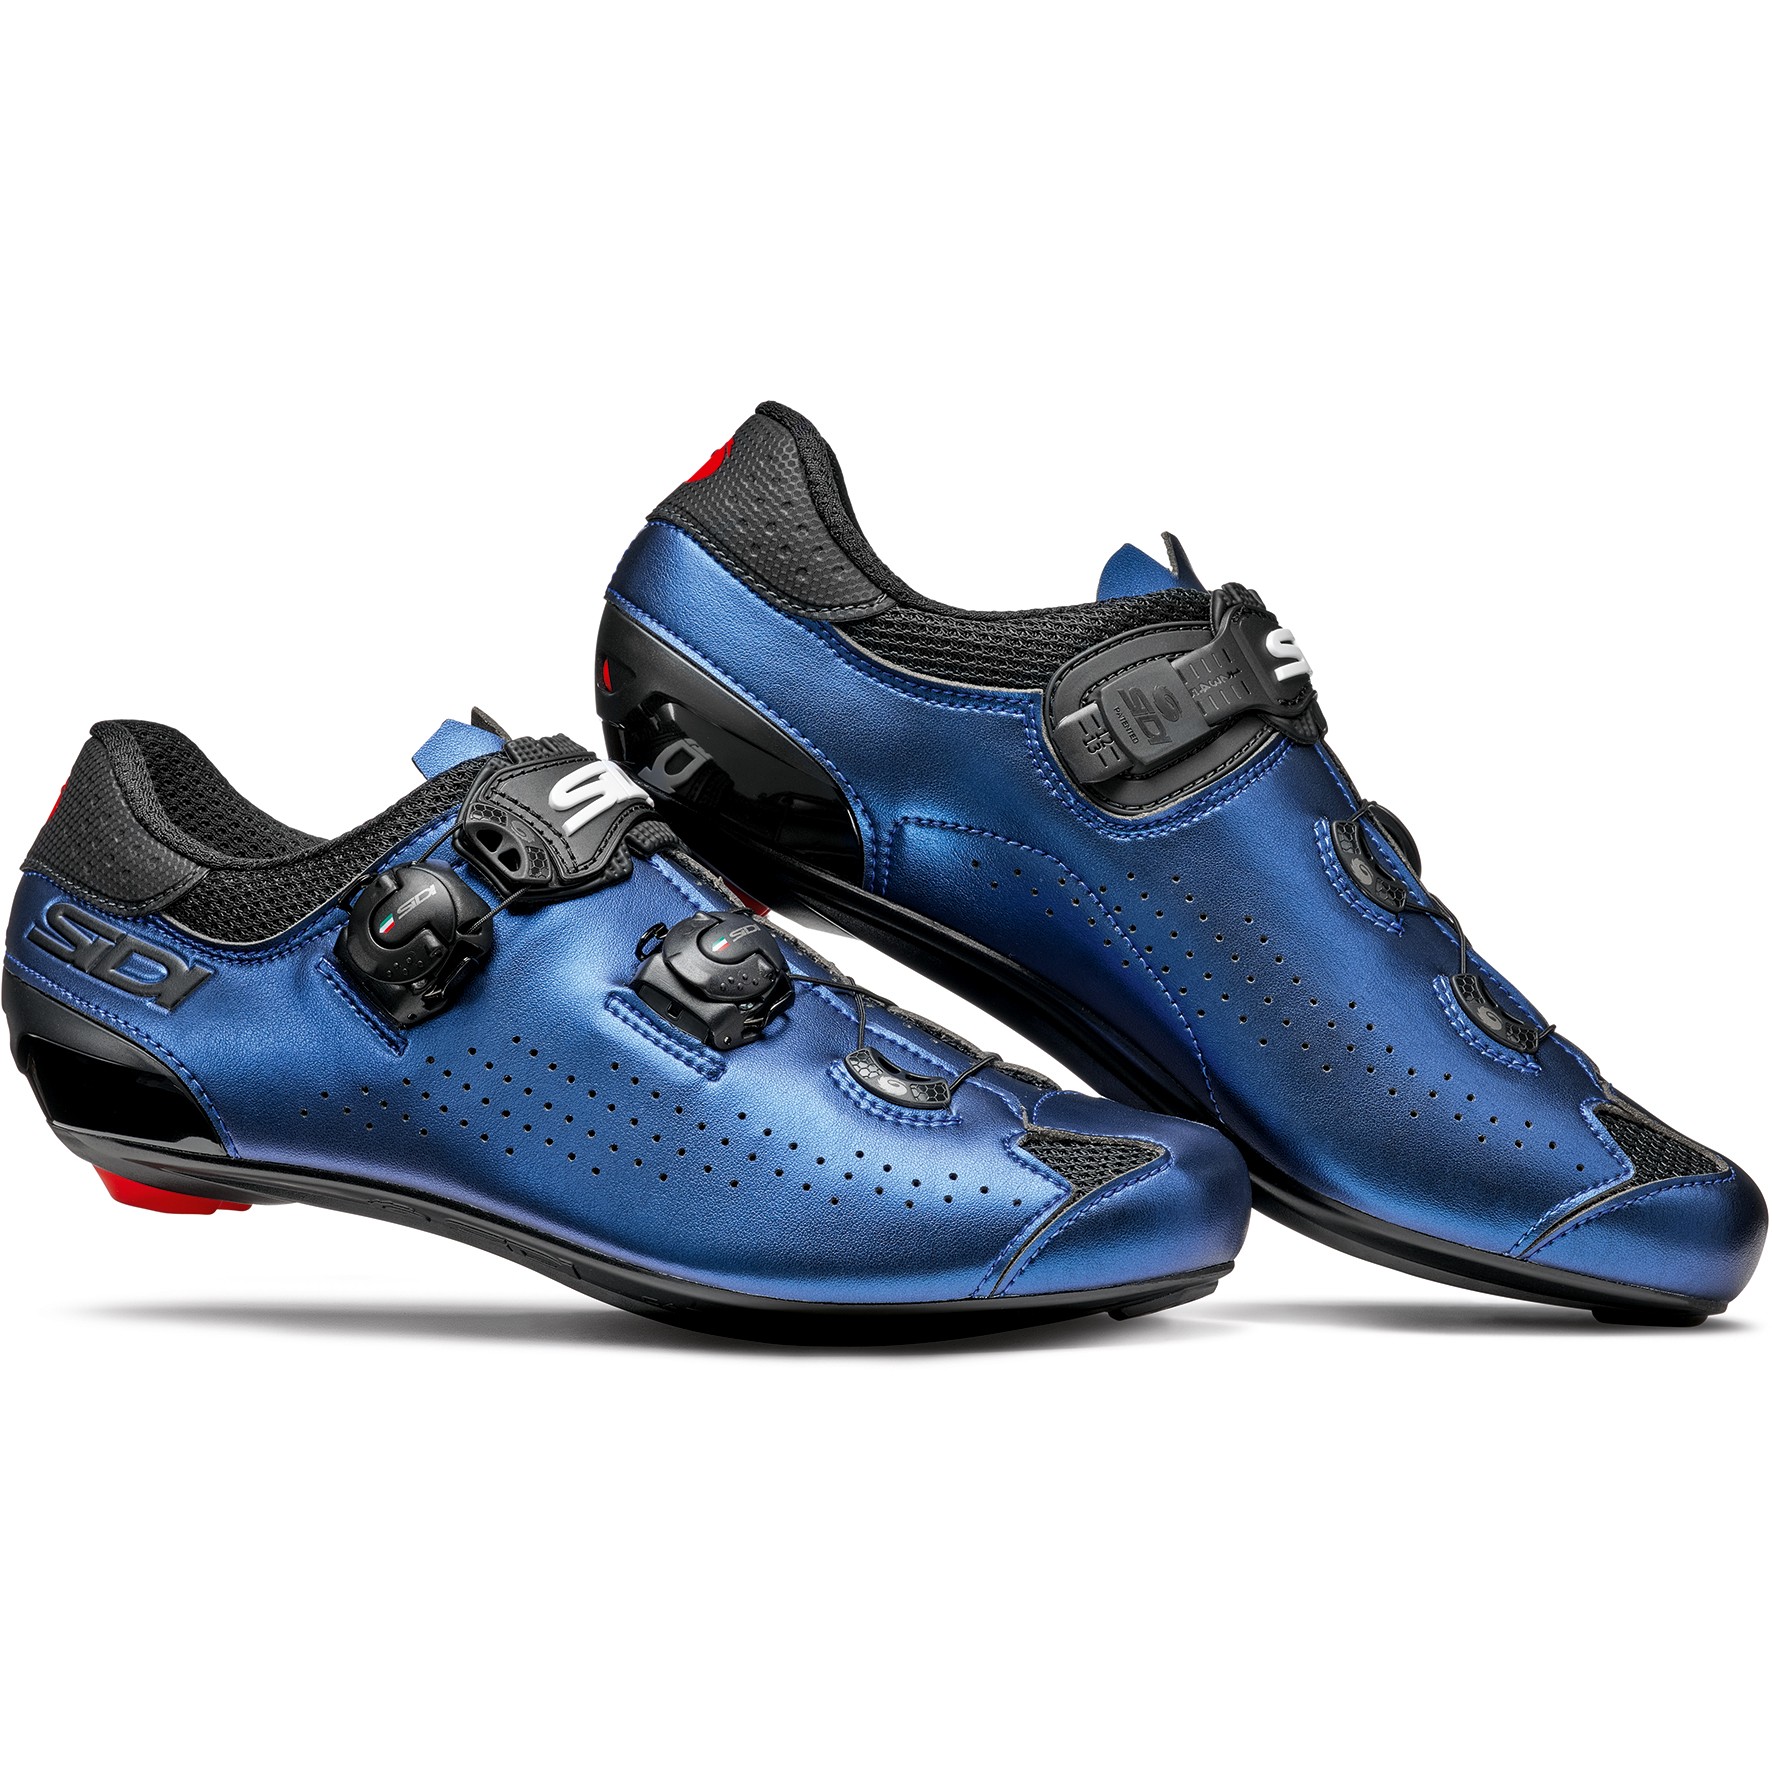 Picture of Sidi Genius 10 Road Shoes - iridescent blue